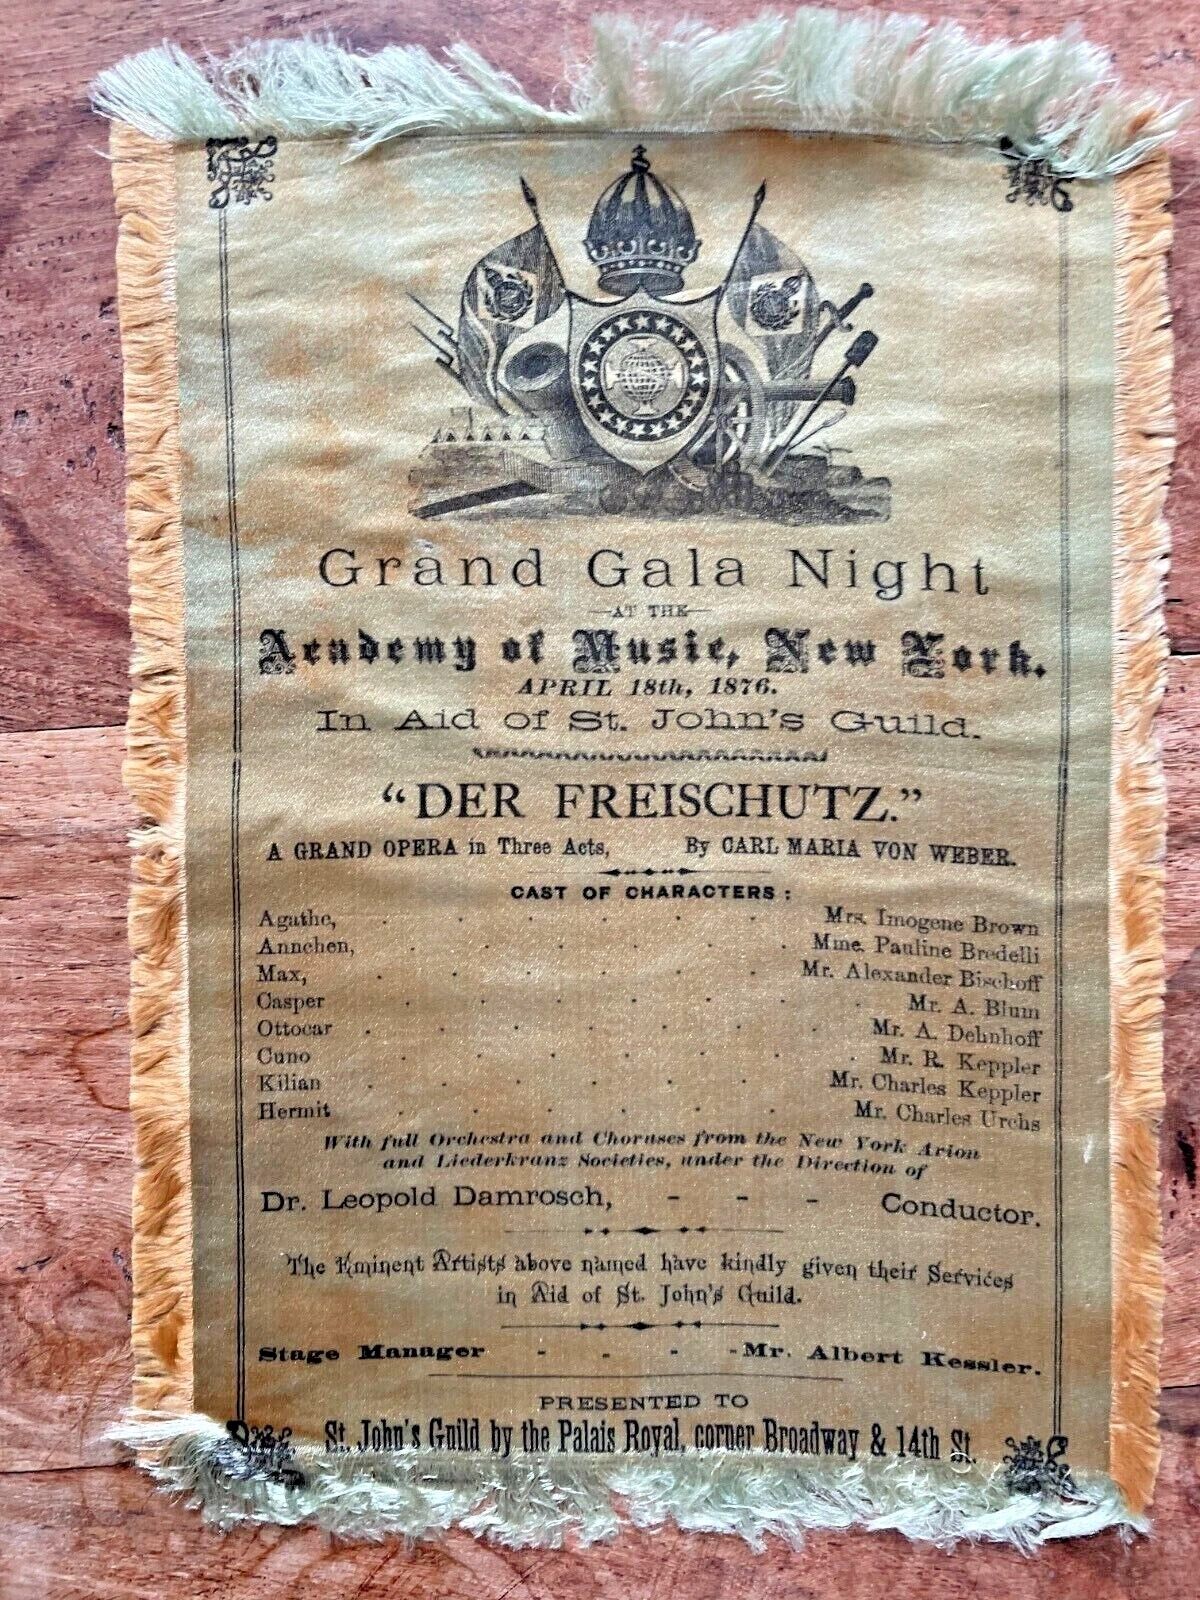 Theatre Opera silk - Academy of Music New York 1876 - Der Freischutz